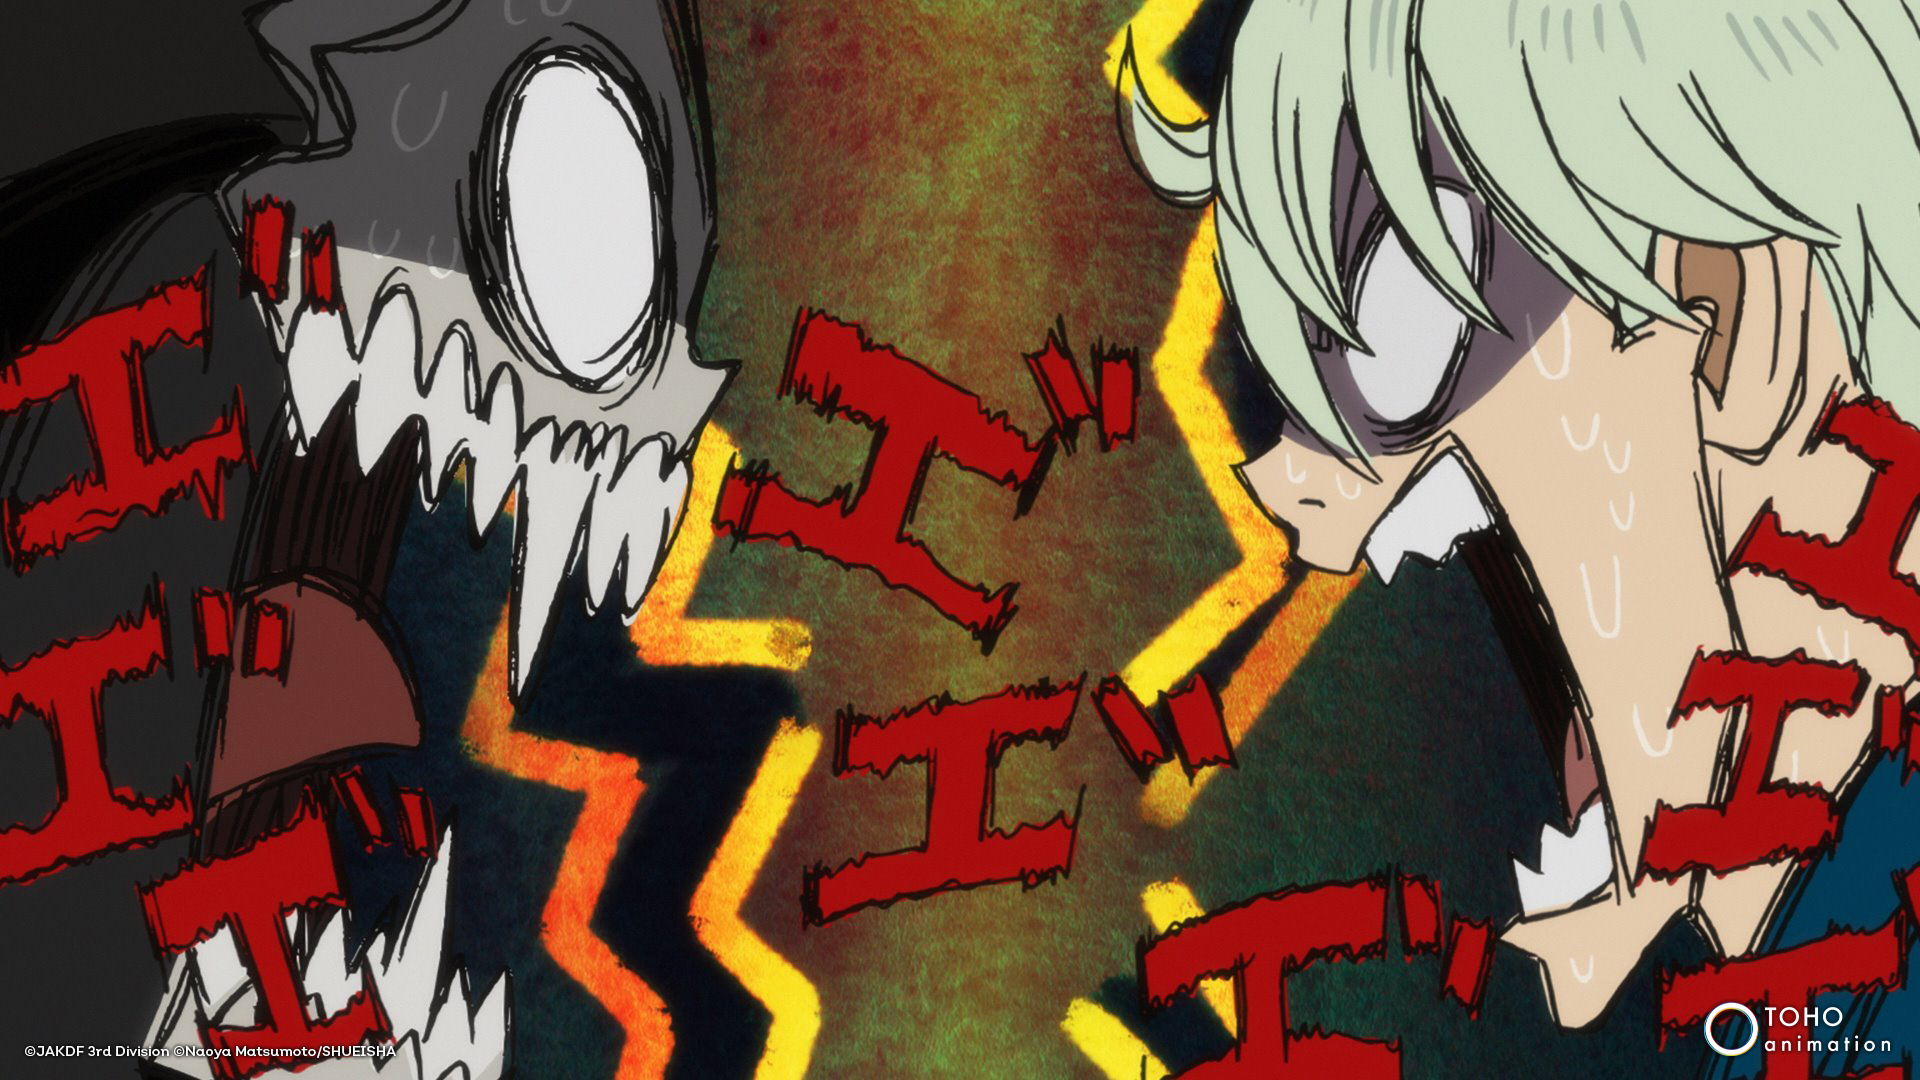 Personajes de anime, uno de cabello blanco y otro con máscara monstruosa, frente a frente con fondo oscuro y letras estilizadas